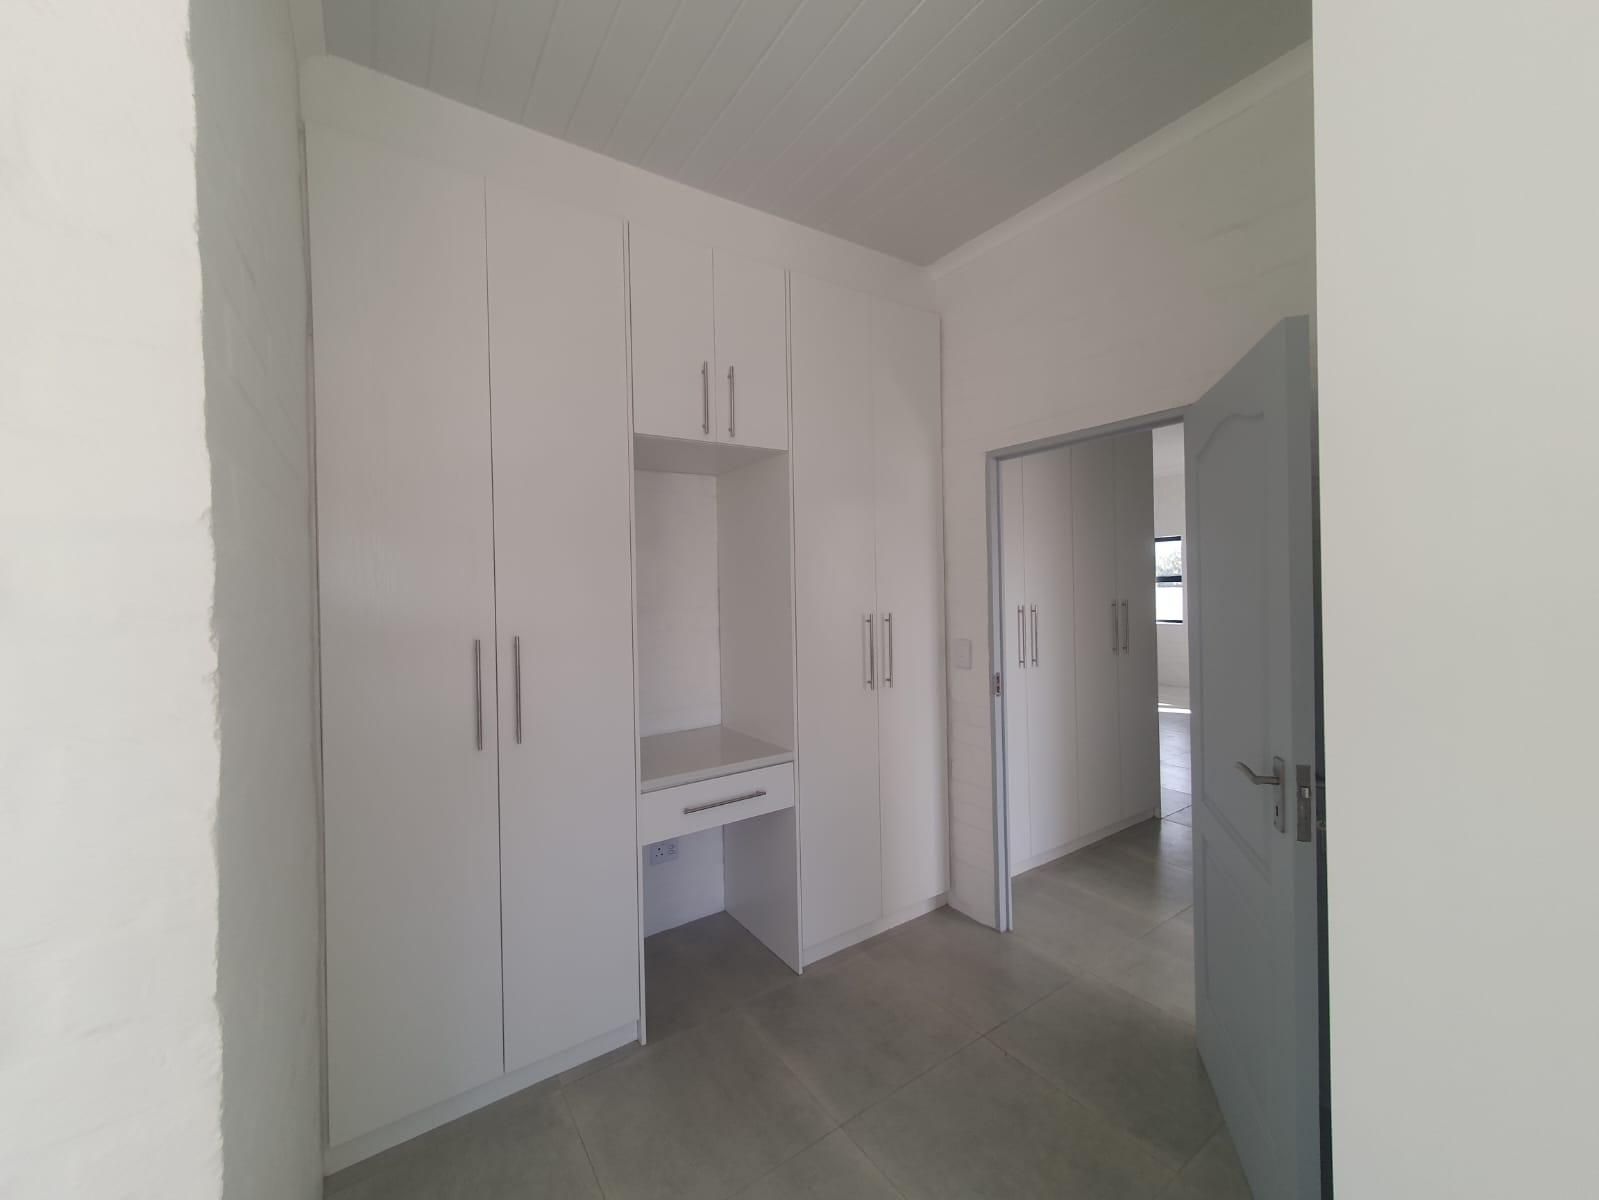 3 Bedroom Property for Sale in Klipfonteyn Western Cape